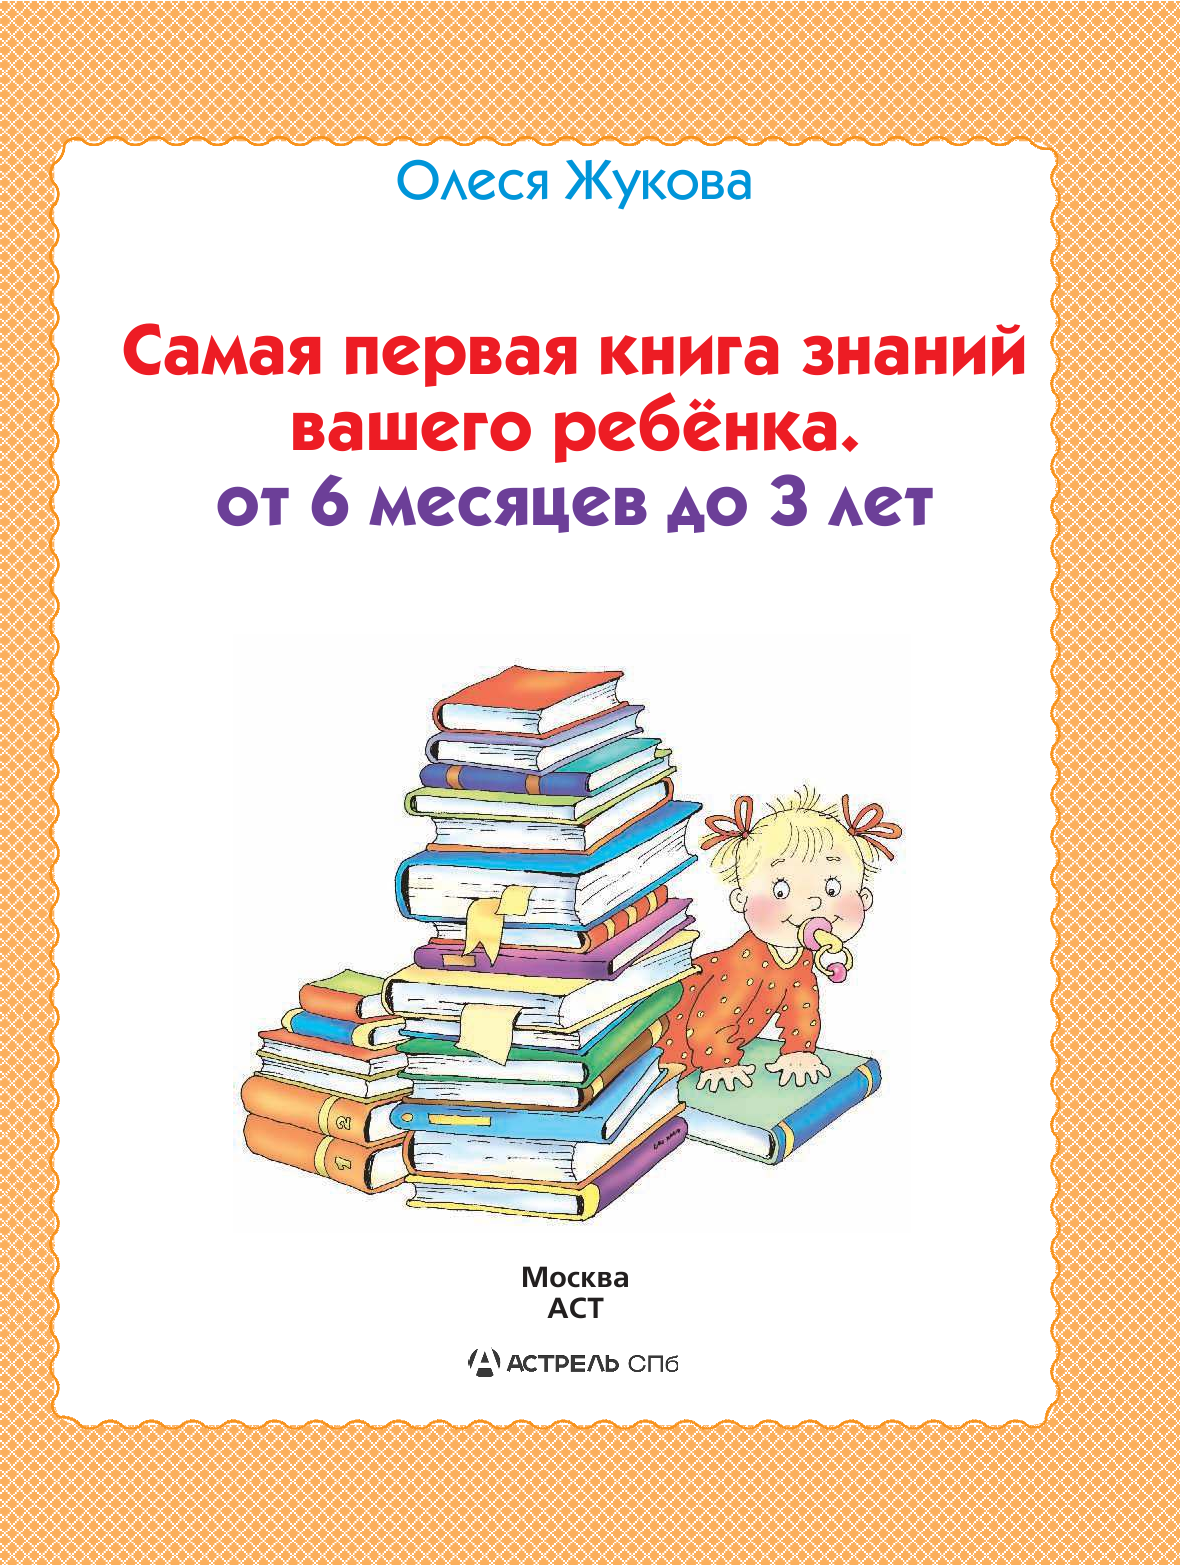 Жукова Олеся Станиславовна Самая первая книга знаний вашего ребенка. От 6 месяцев до 3 лет - страница 1